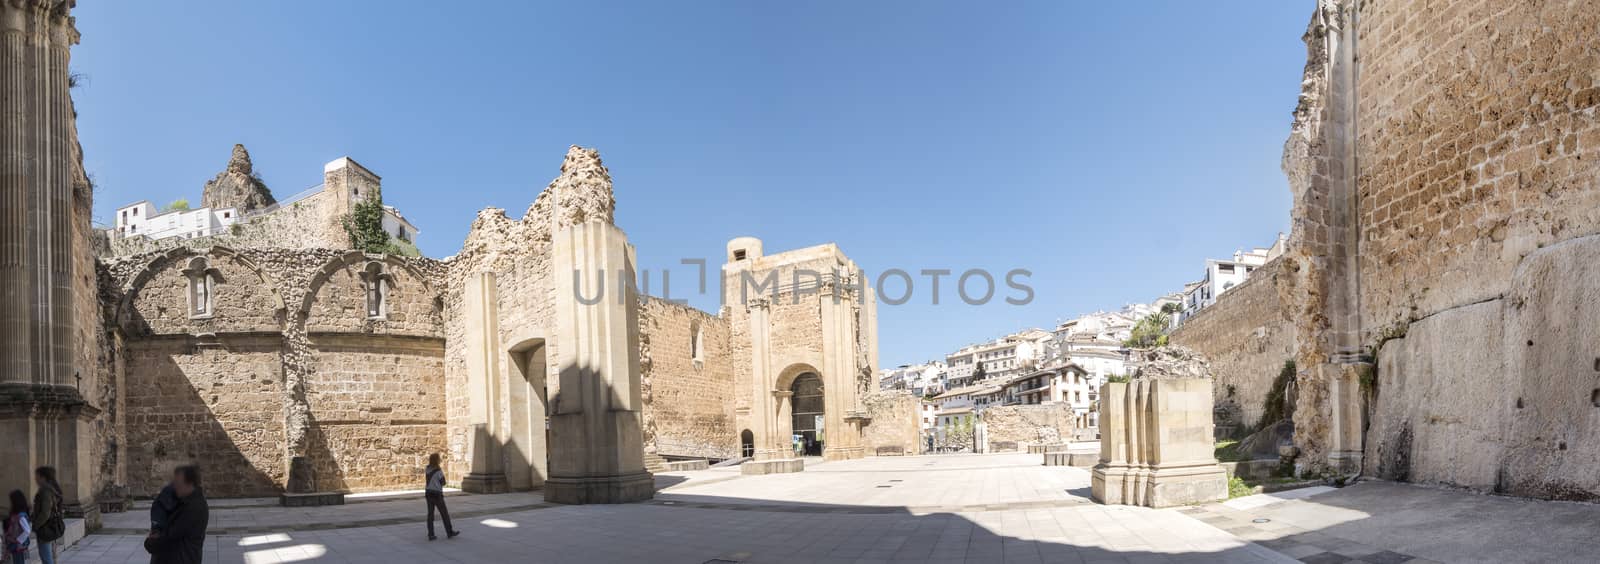 Santa Maria church ruins, Cazorla, Jaen, Spain